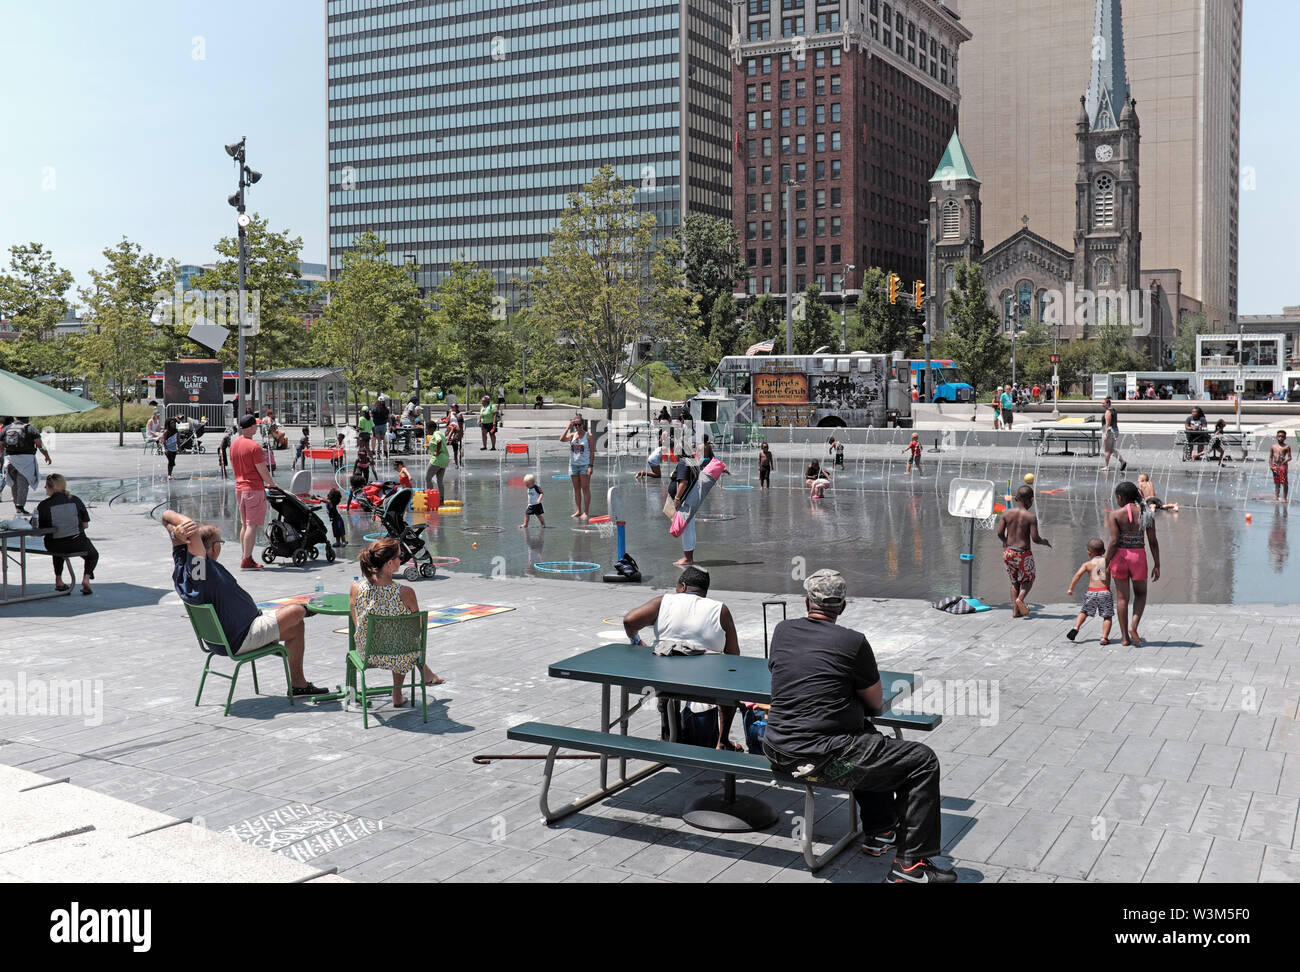 Place publique dans le centre-ville de Cleveland (Ohio) est un aimant pour les chaudes journées d'été où les gens peuvent se rafraîchir dans de l'eau des fontaines publiques. Banque D'Images